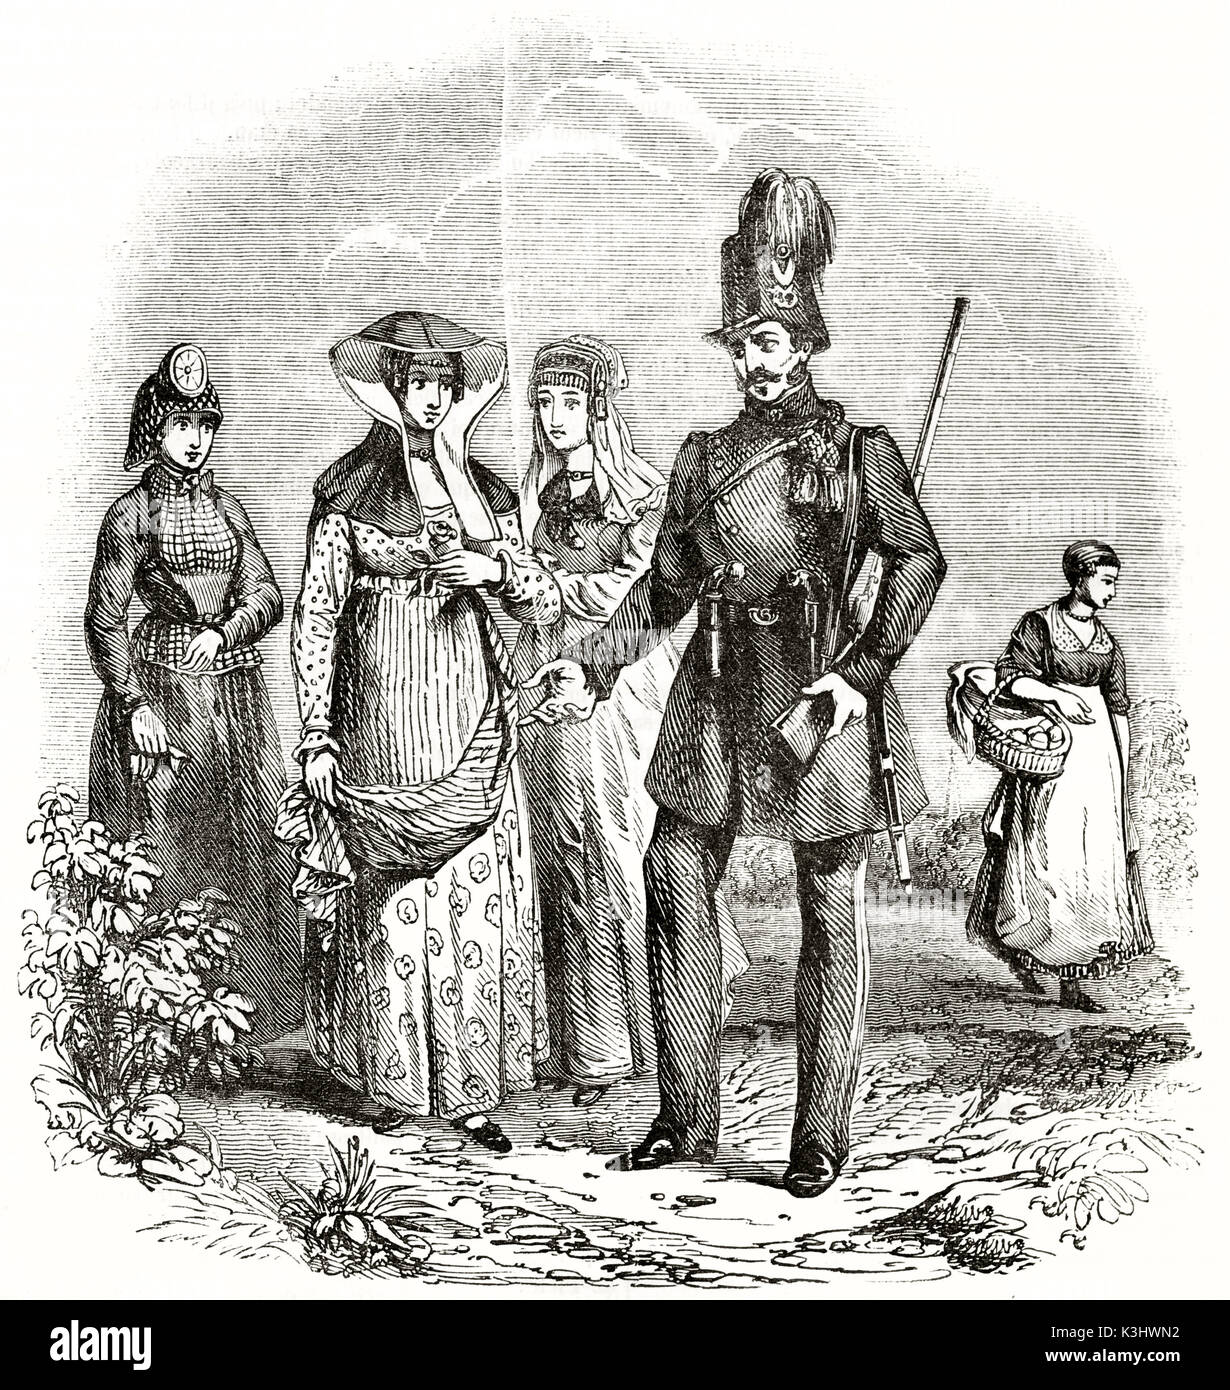 Ilustración antigua del pueblo holandés en trajes tradicionales. creado por Quarterly, publicado en el Magasin pintoresco, París, 1838 Foto de stock